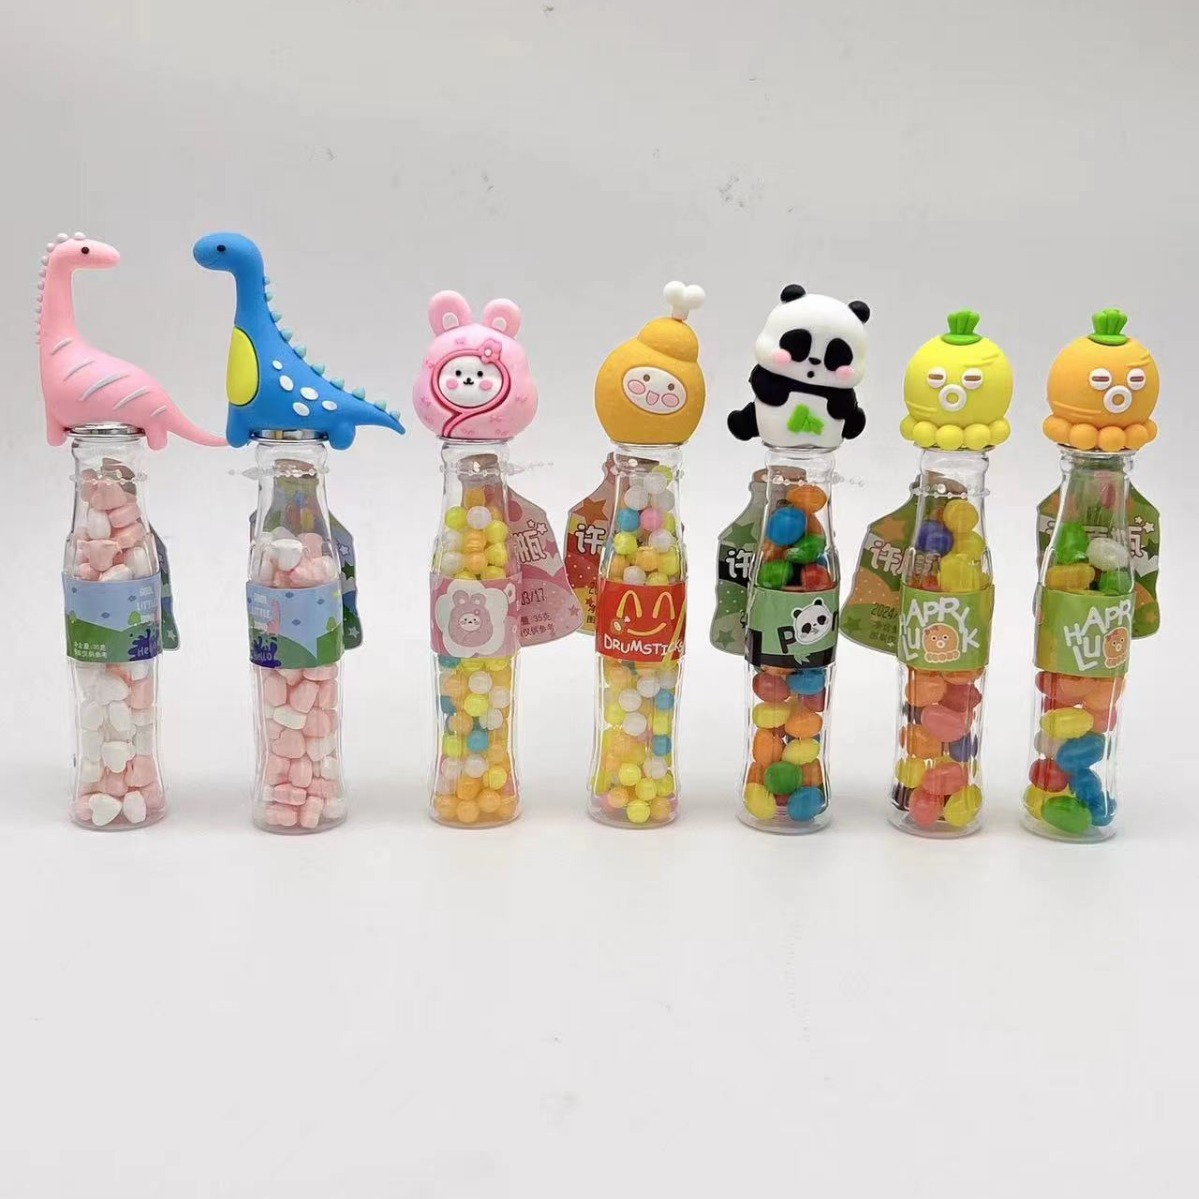 创意珍珠糖网红宝贝兔许愿瓶七彩糖果批发儿童小零食瓶装卡通糖果